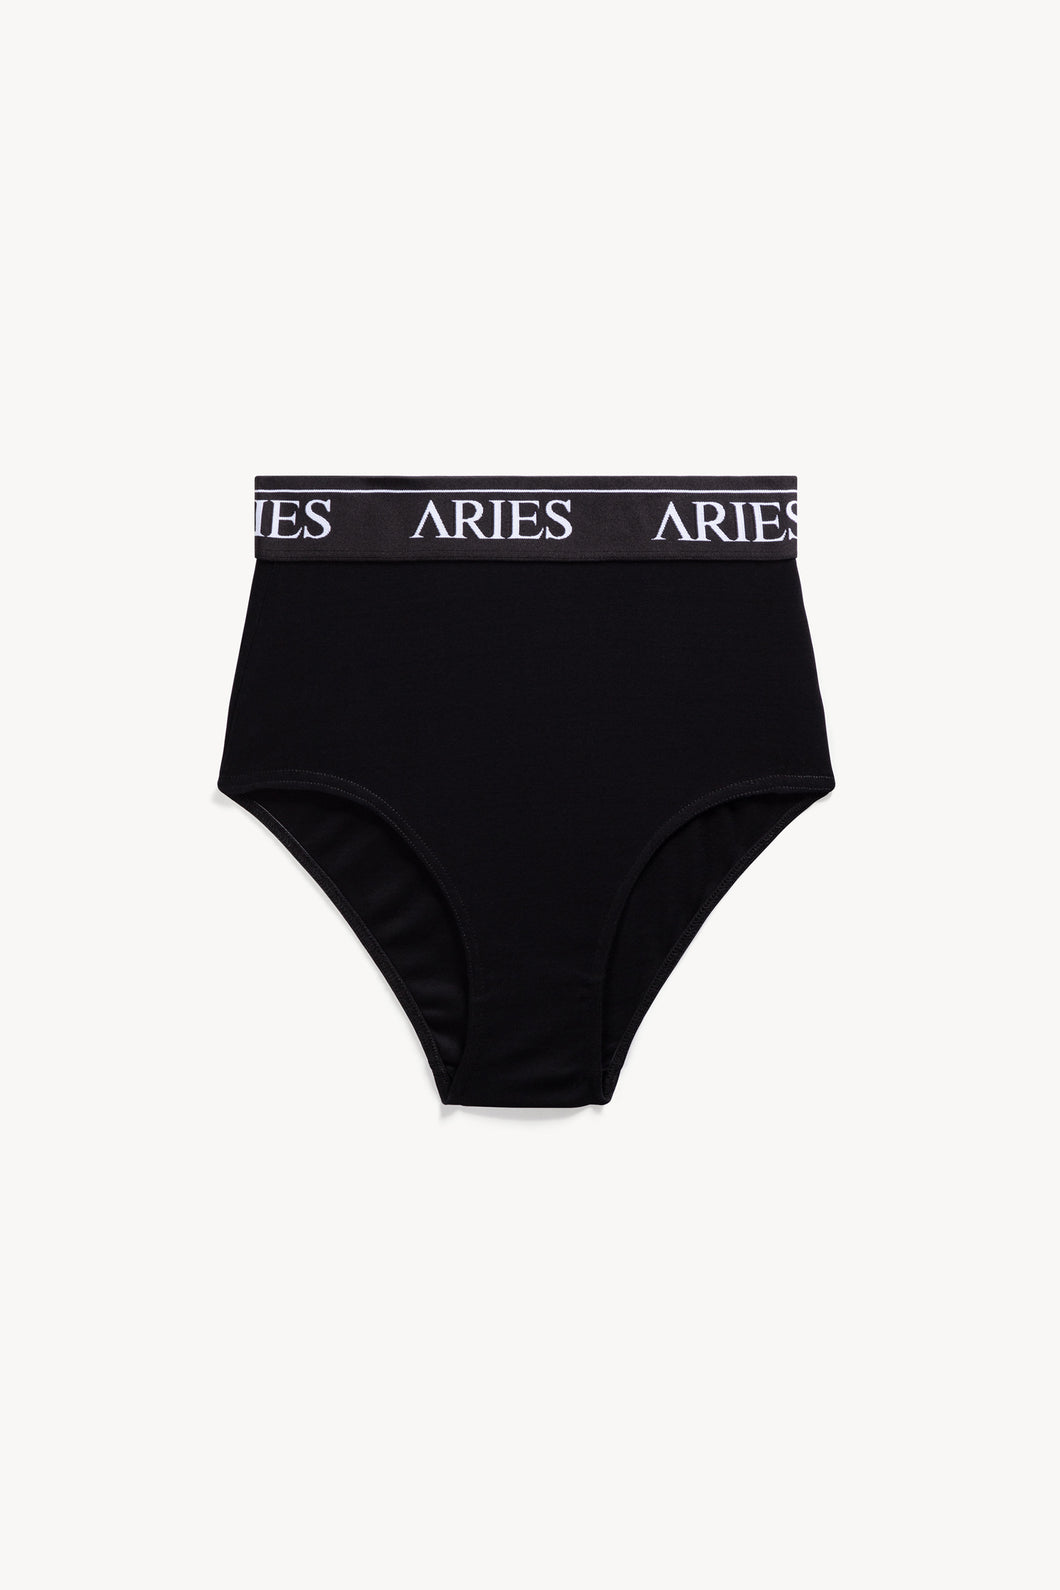 Aries + Rib High Waist Brief